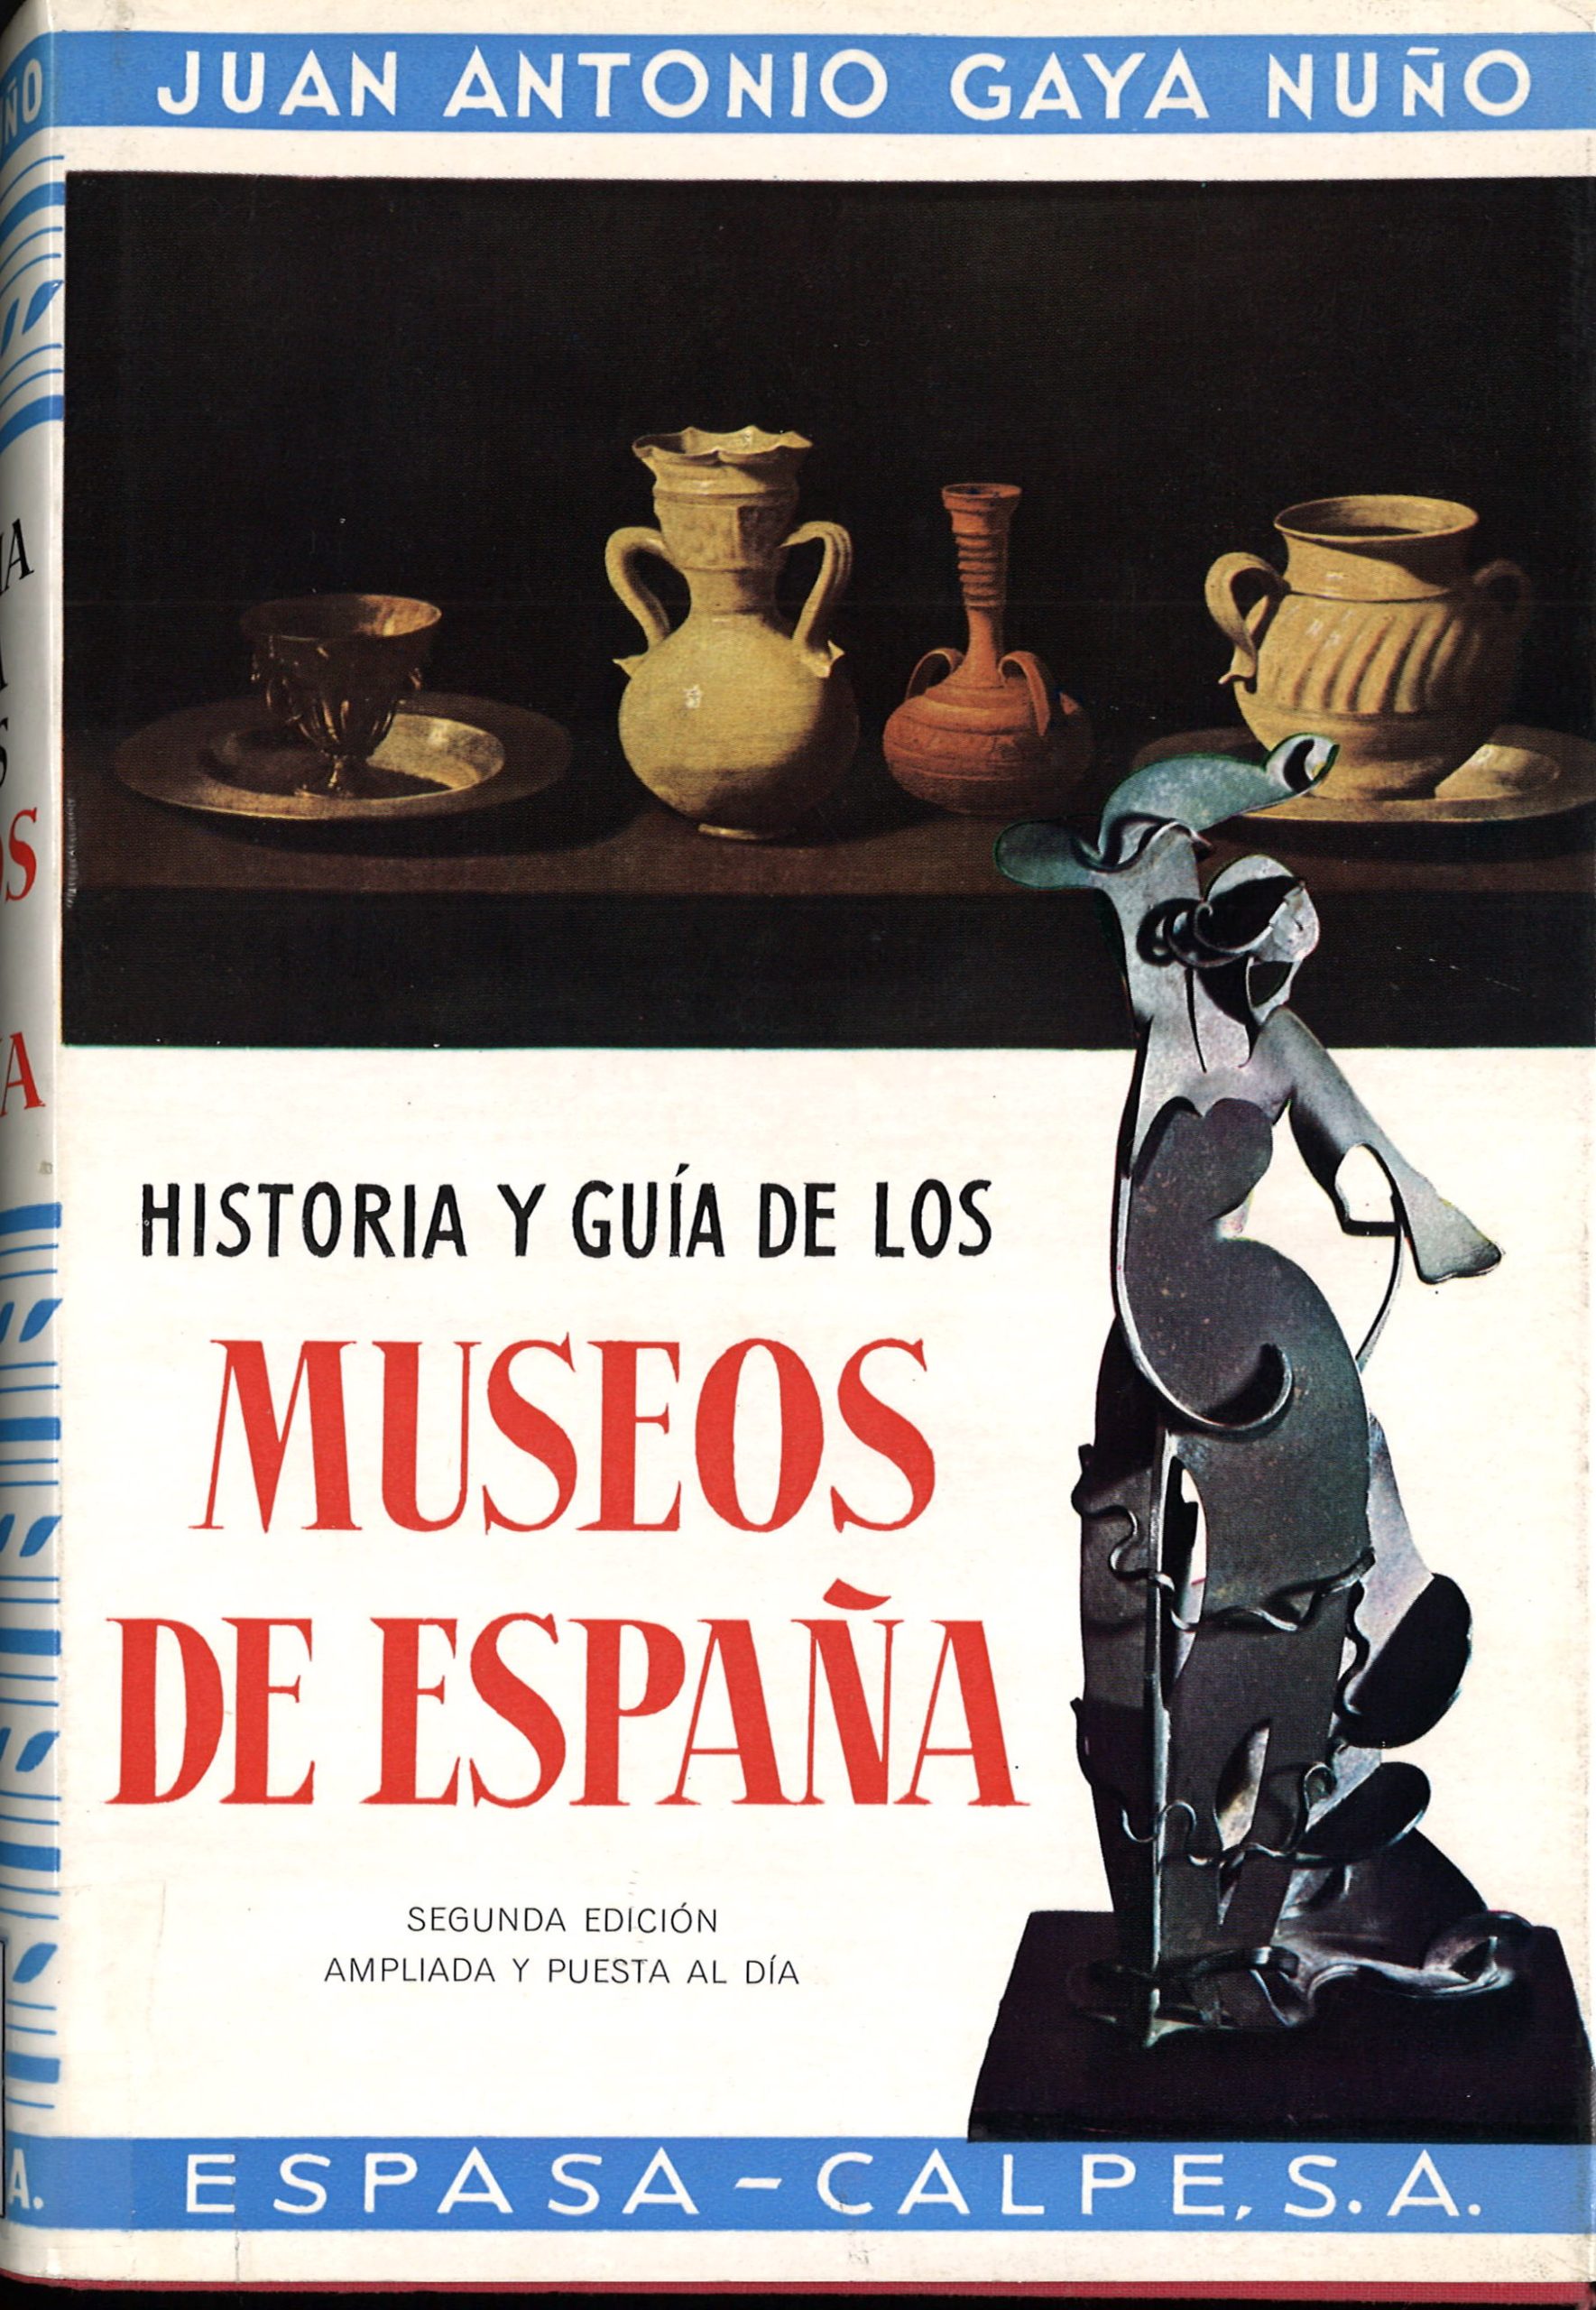 Historia y guía de los Museos en España. Juan Antonio Gaya Nuño-image